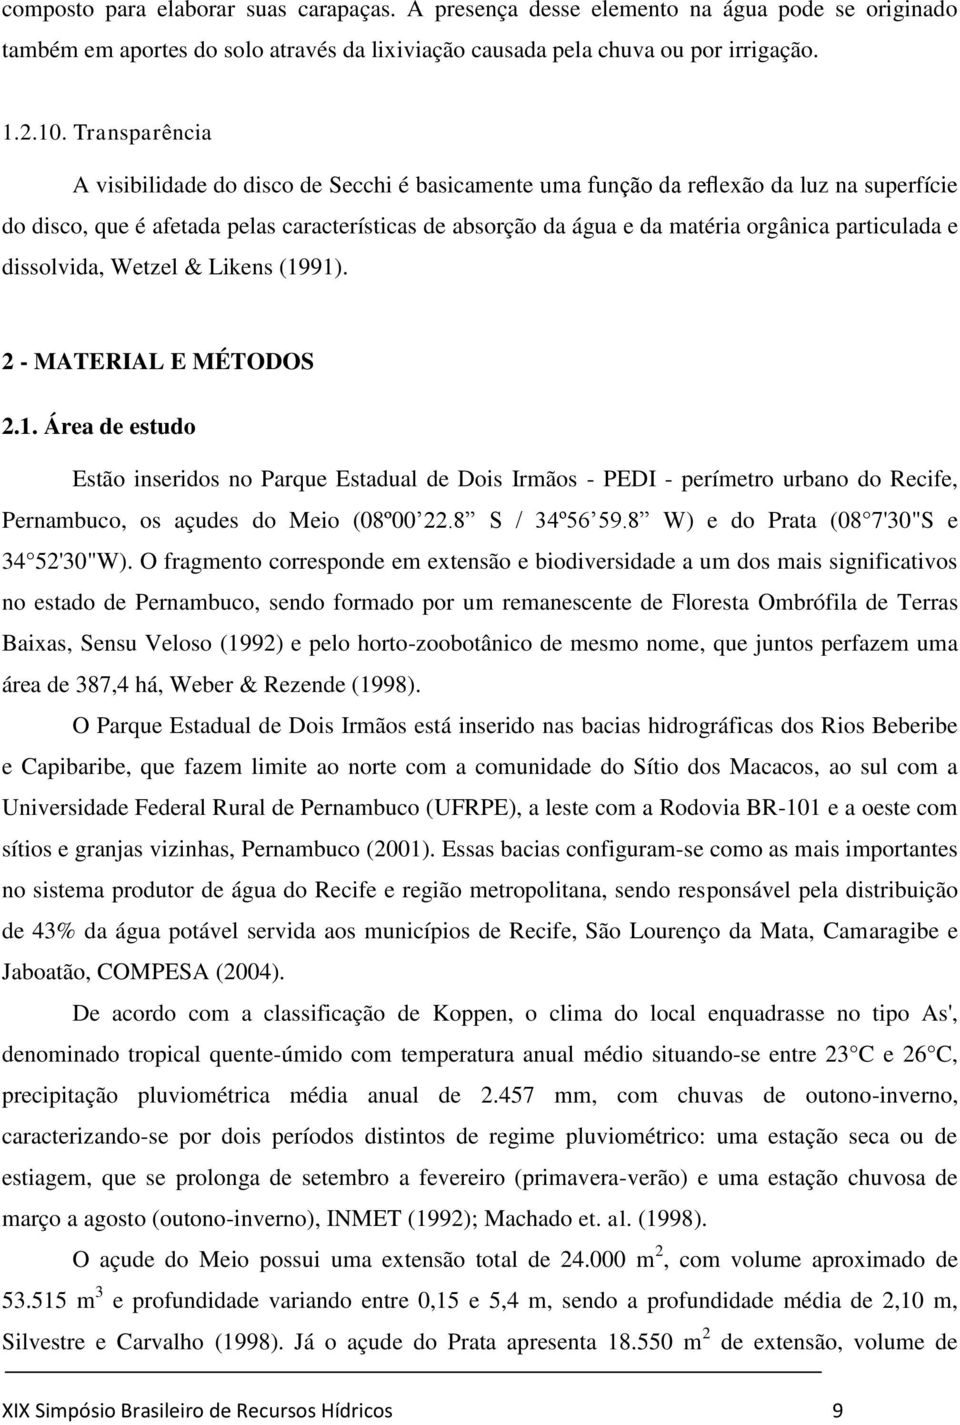 particulada e dissolvida, Wetzel & Likens (1991). 2 - MATERIAL E MÉTODOS 2.1. Área de estudo Estão inseridos no Parque Estadual de Dois Irmãos - PEDI - perímetro urbano do Recife, Pernambuco, os açudes do Meio (08º00 22.